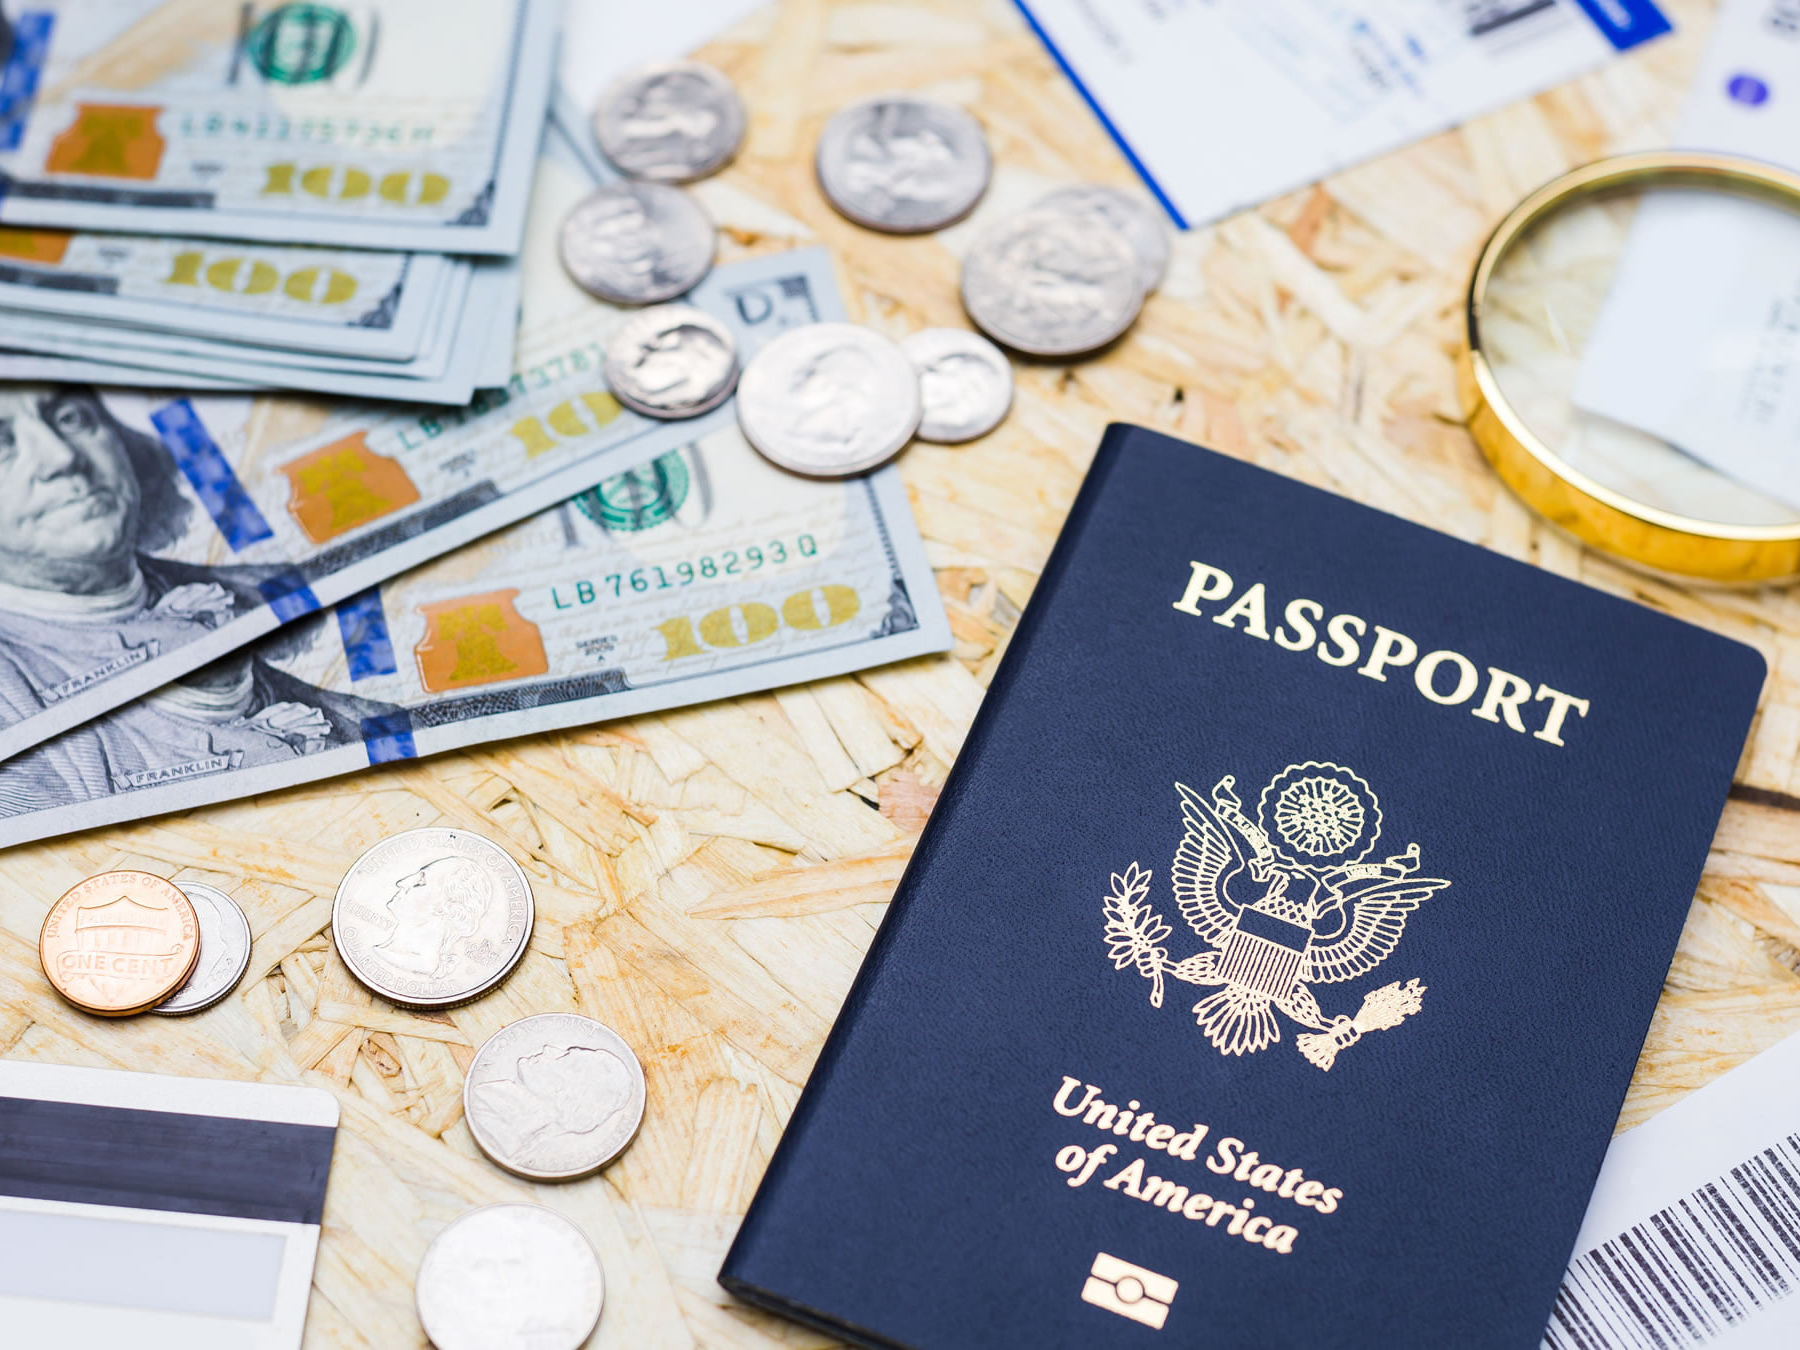 أشياء لا يجب فعلها أثناء رحلة أمريكا للمقيمين في الإمارات - لا تنس وثائق السفر الضرورية